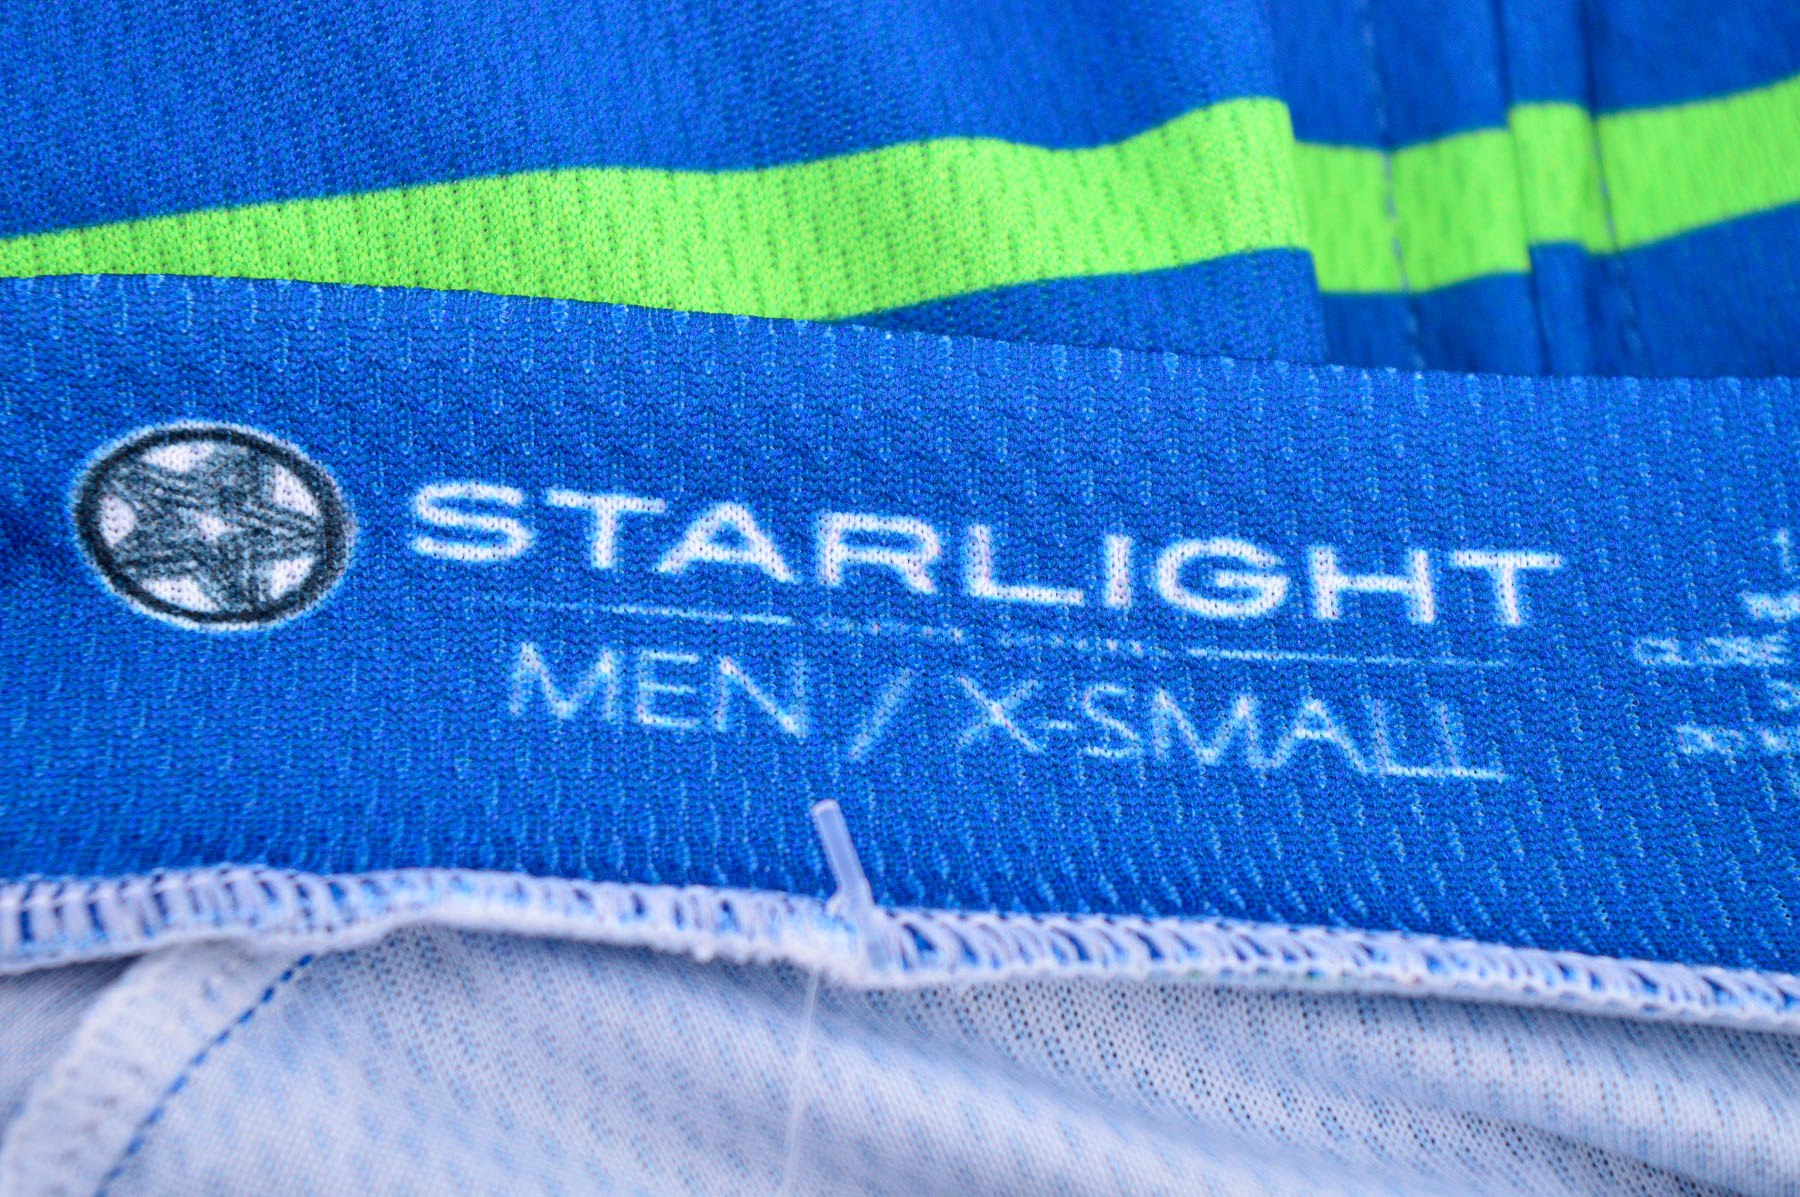 Αντρική μπλούζα Για ποδηλασία - STARLIGHT - 2